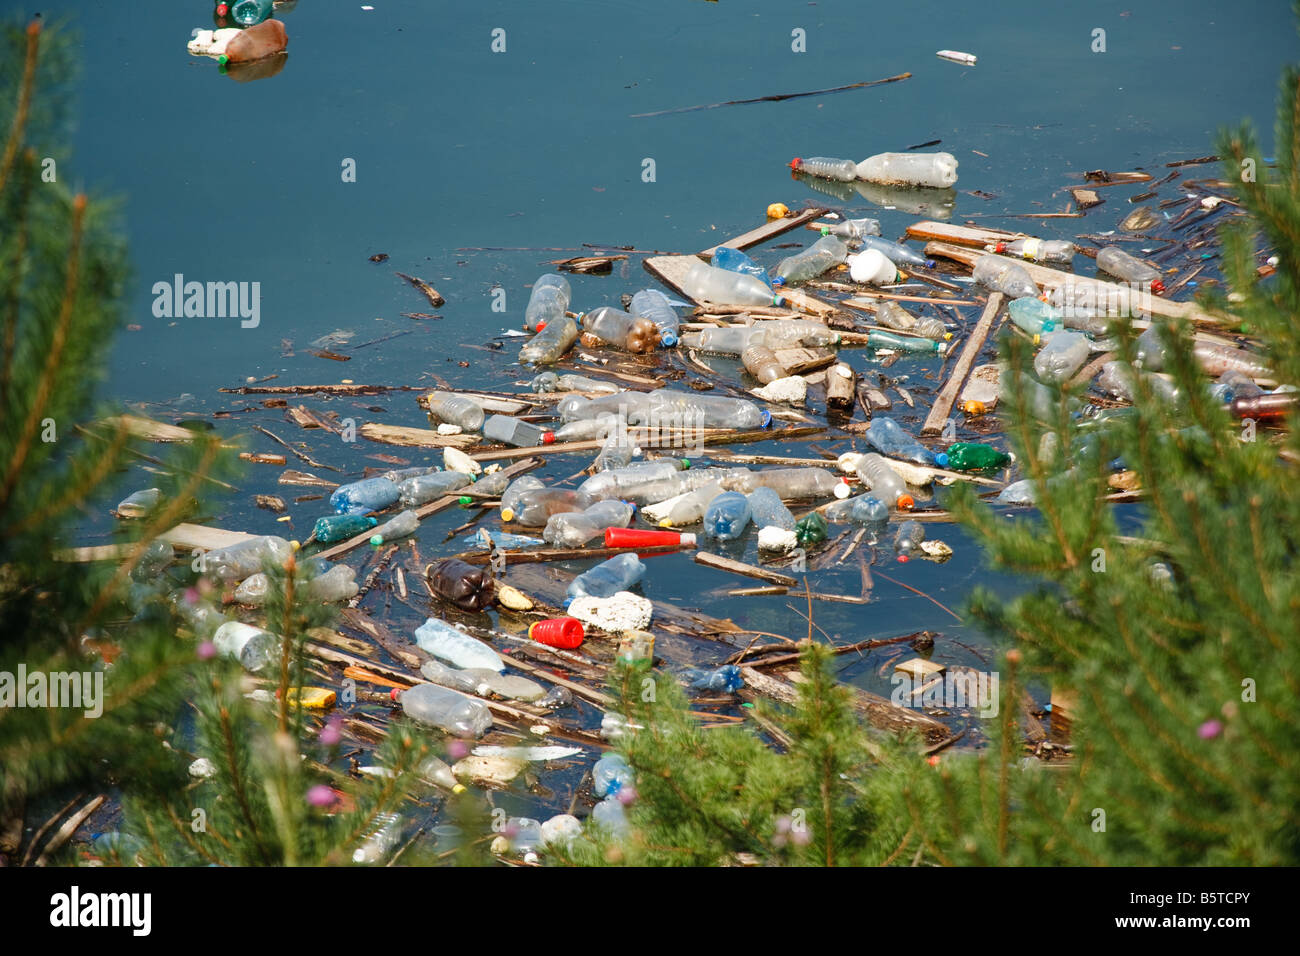 La pollution en plastique et autres déchets sur la pureté de l'eau du lac Banque D'Images